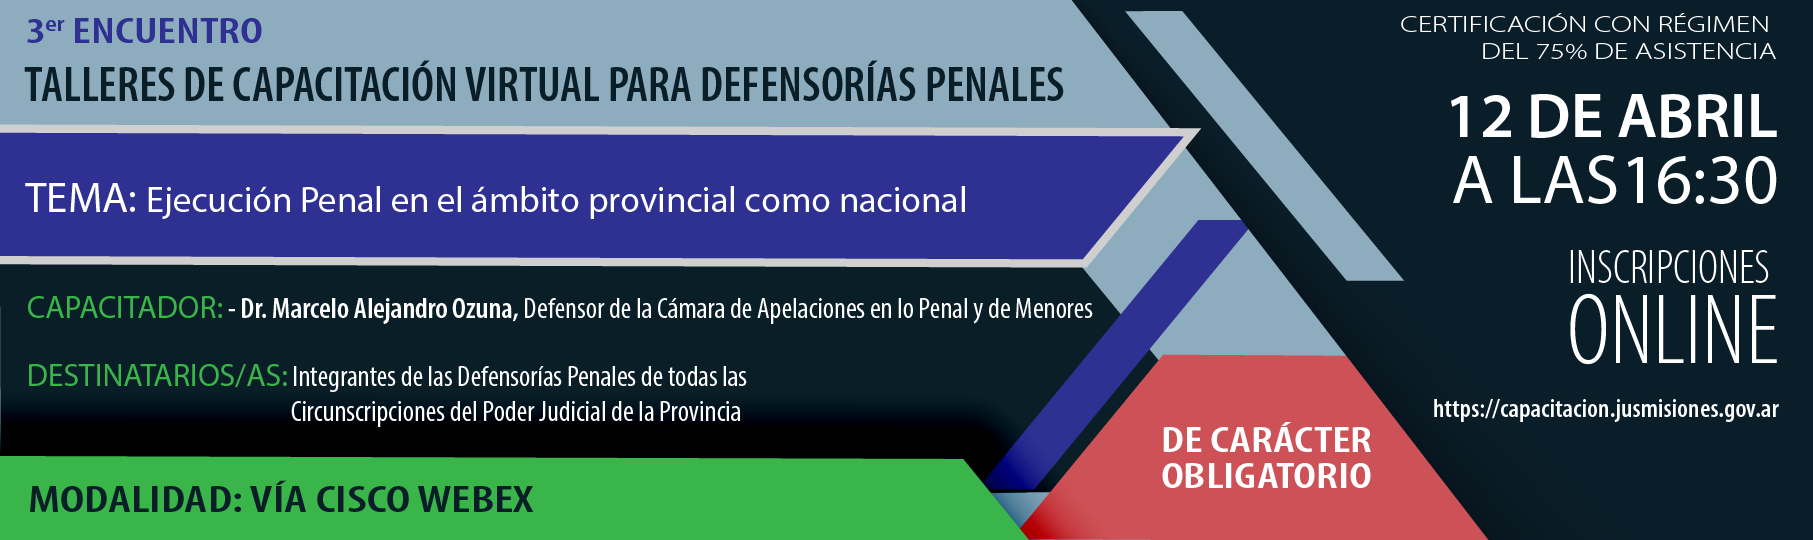 P3_Talleres_de_cap_virtual_para_Defensoras_penales-01